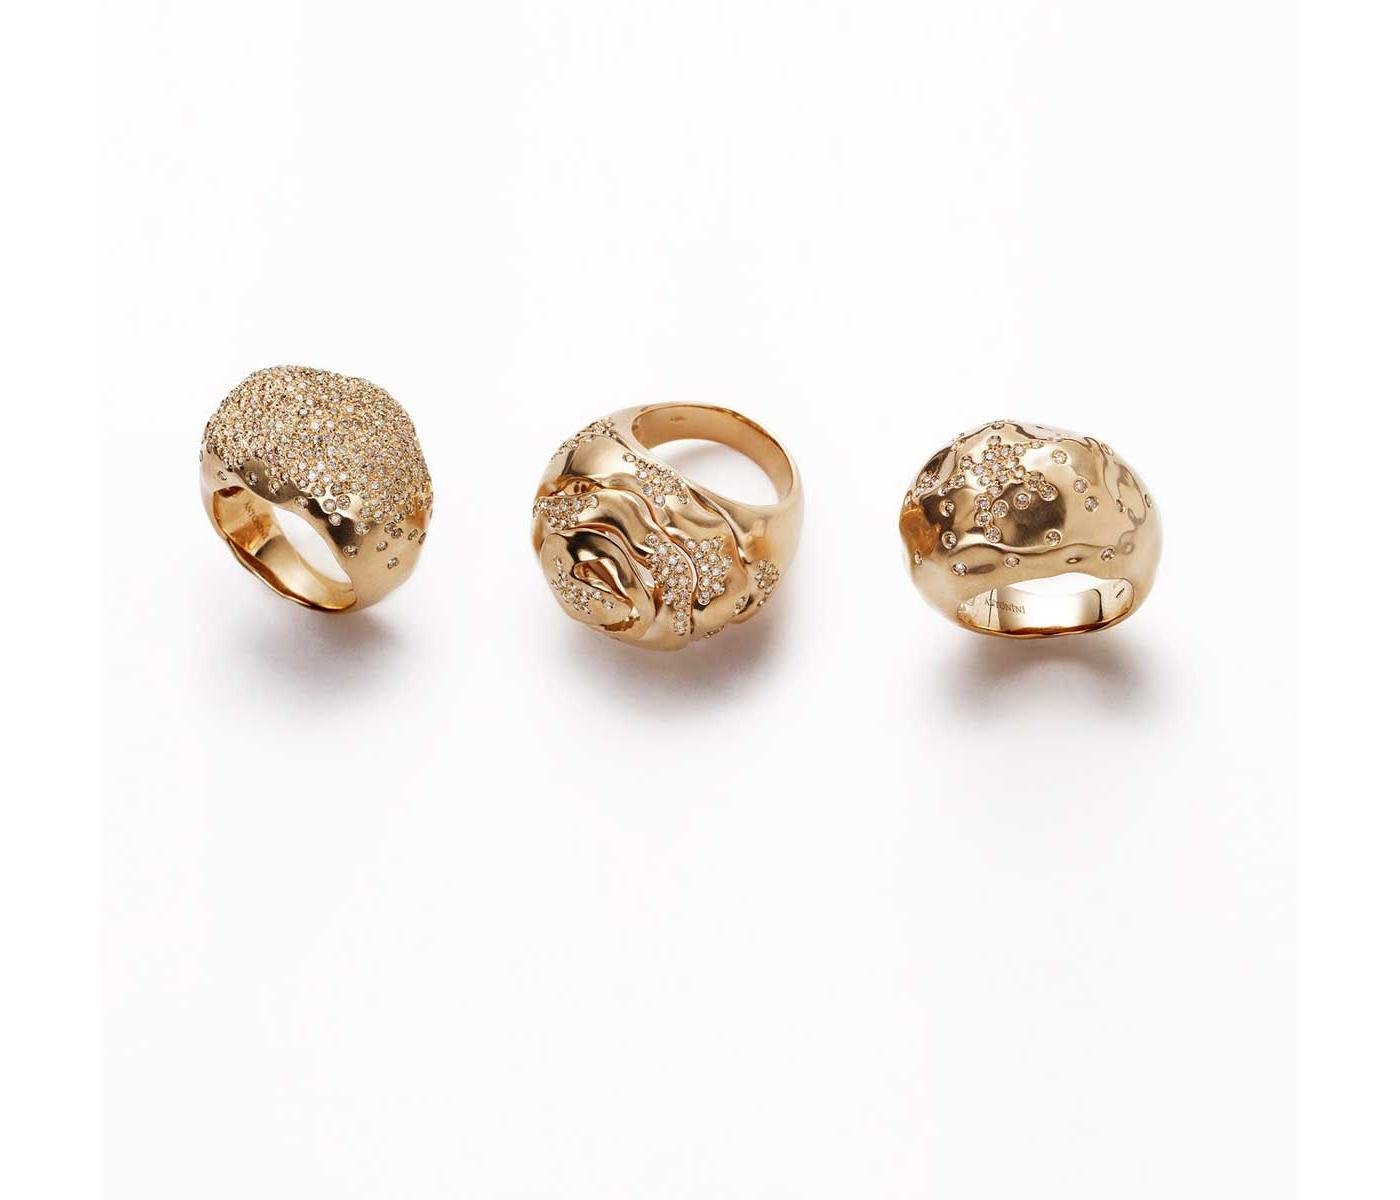 Rings by Antonini